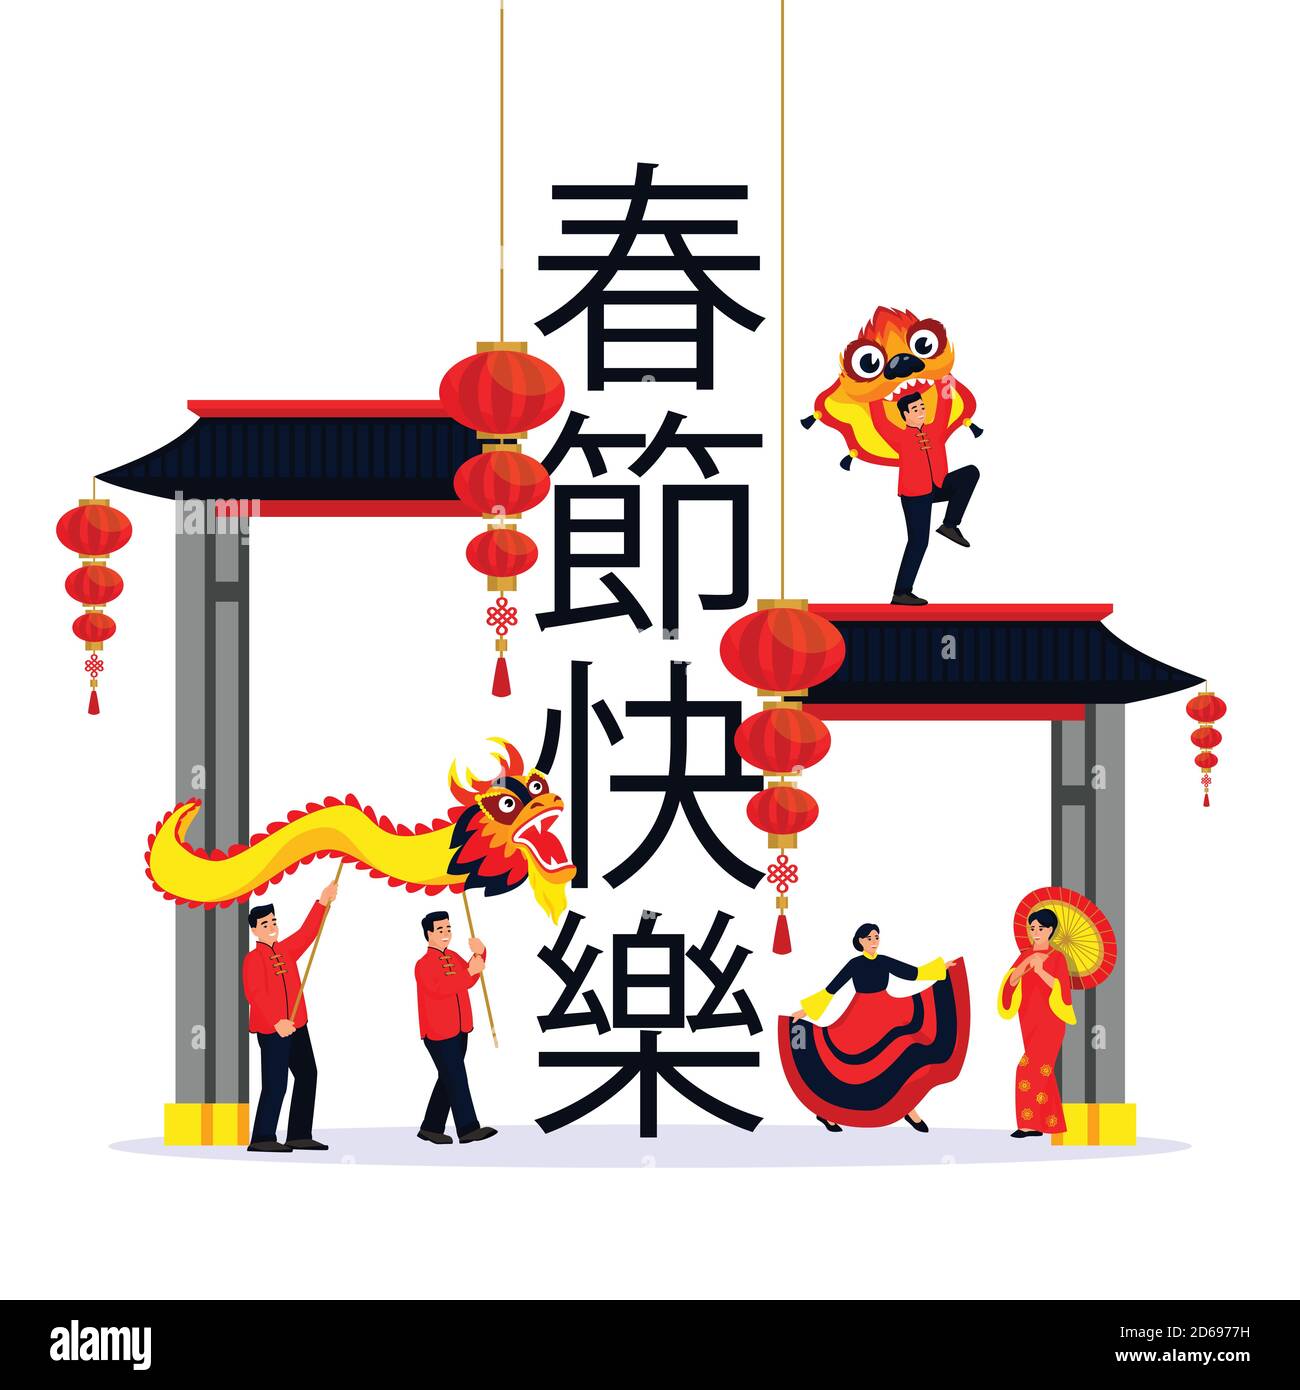 Wir Feiern Das Chinesische Mondneujahr. Vektor flach Cartoon isolierte Illustration. Tanzende Menschen, Drachen und Laternen auf chinesischen Schriftzeichen bedeuten Happy Ch Stock Vektor